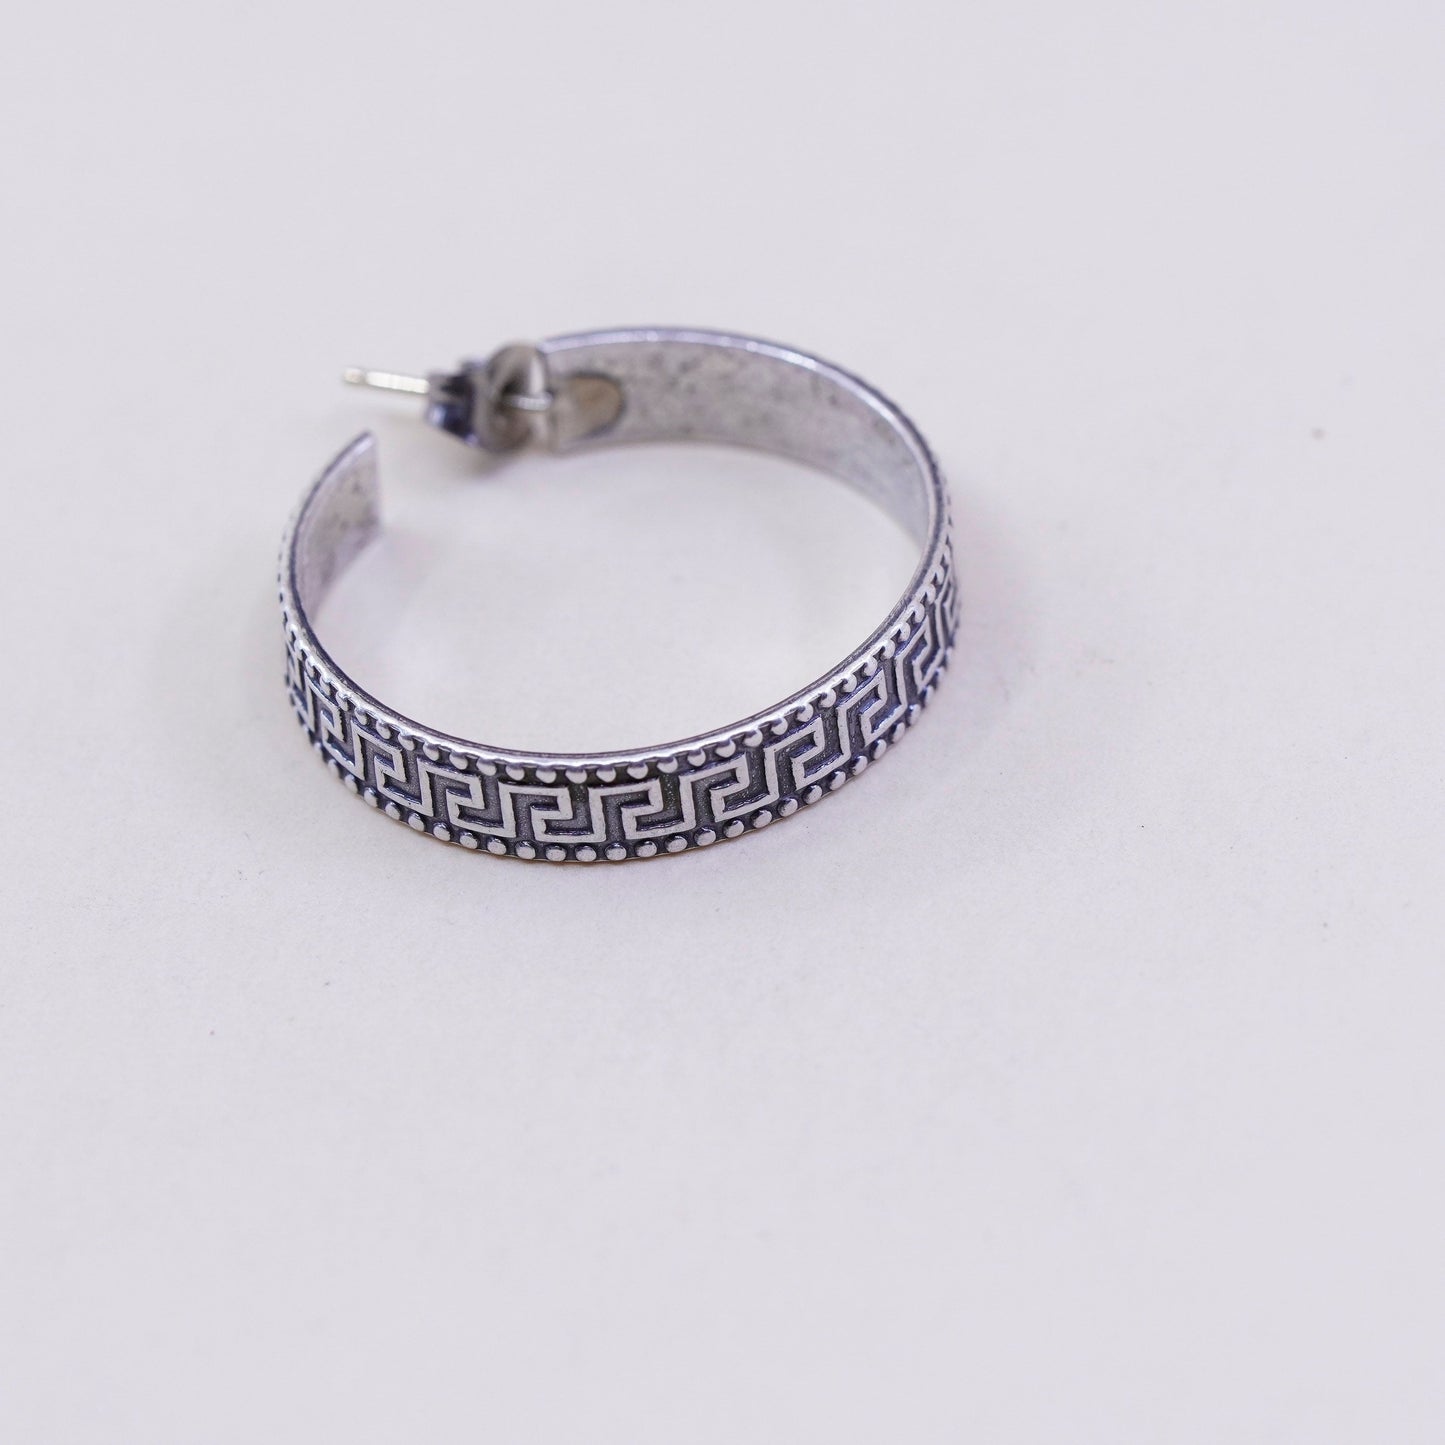 1.25”, sterling silver handmade earrings, Greek key primitive Huggie hoops